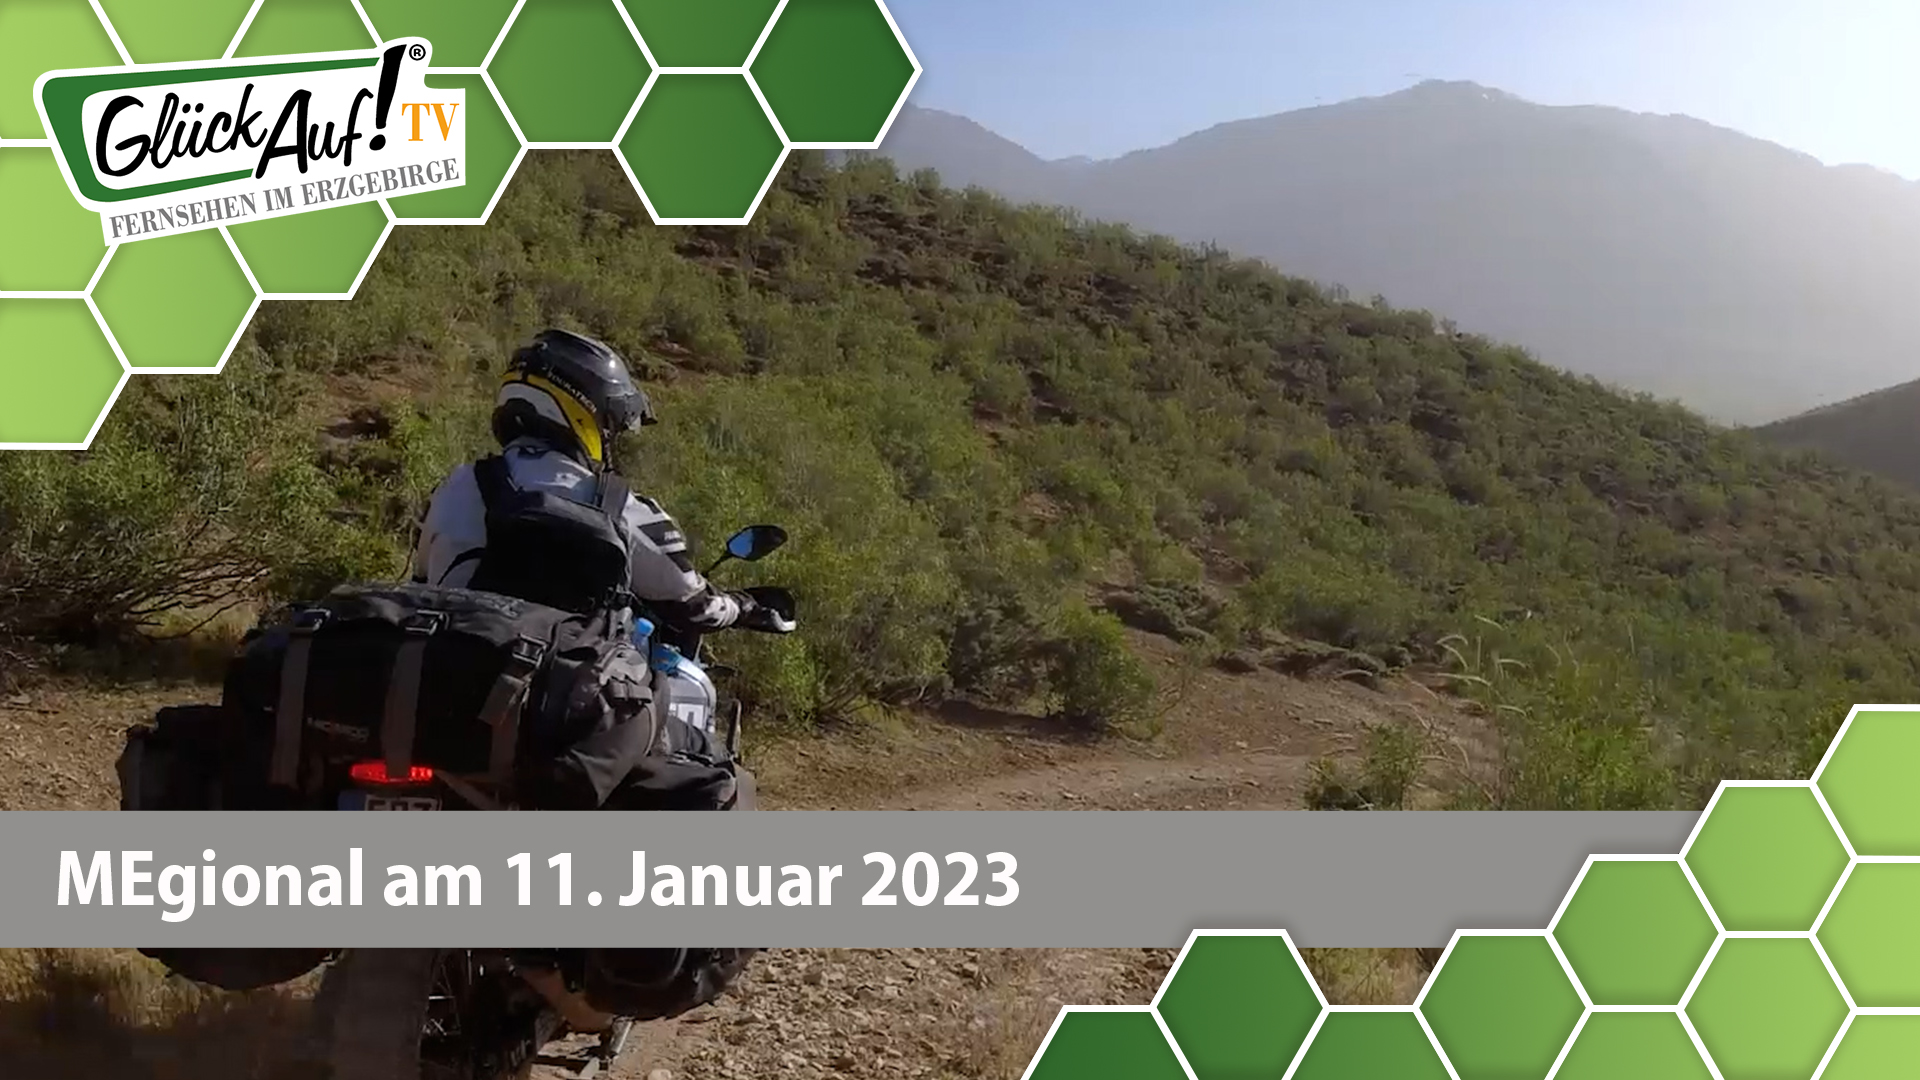 MEgional am 11. Januar 2023 - mit der Motorrad-Weltreise